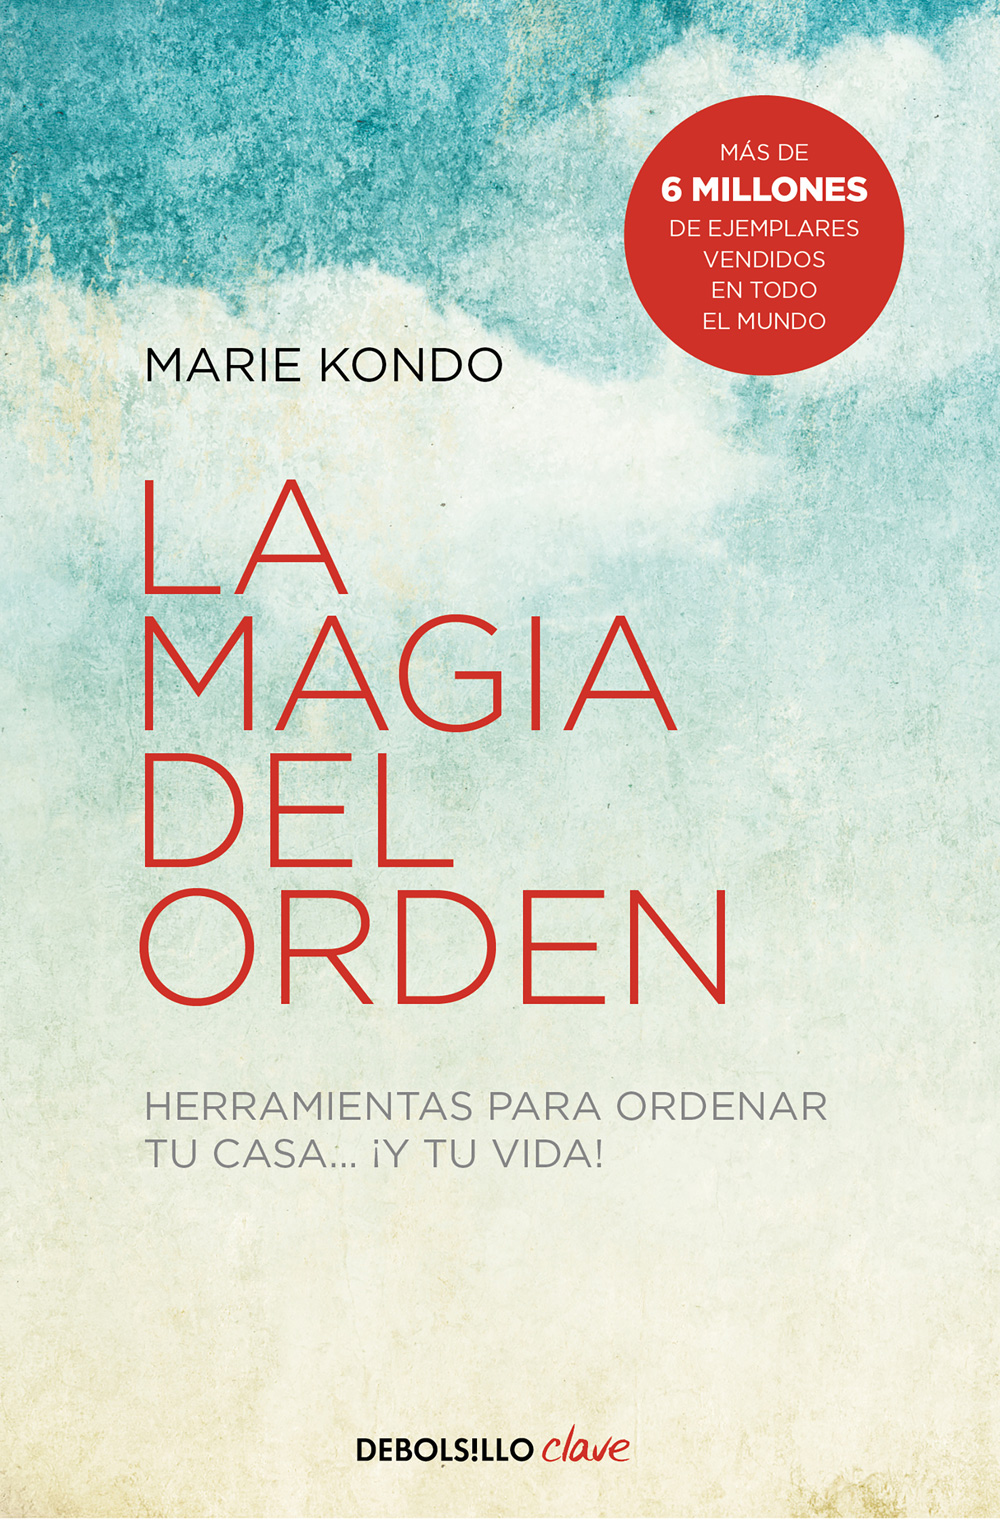 La magia del orden de Marie Kondo